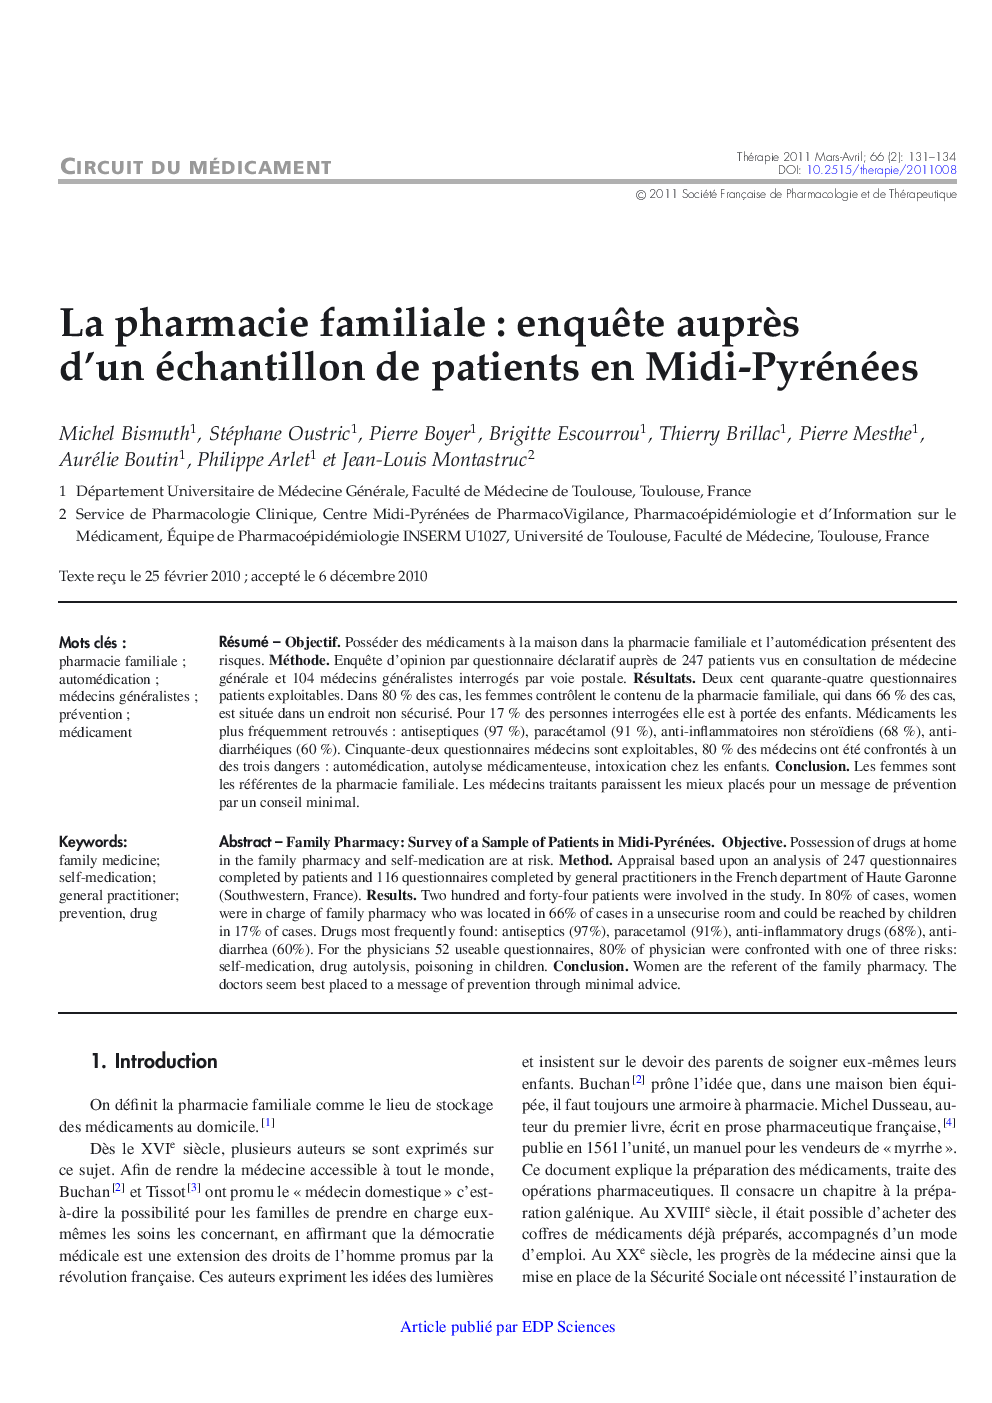 La pharmacie familiale : enquÃªte auprÃ¨s d'un échantillon de patients en Midi-Pyrénées